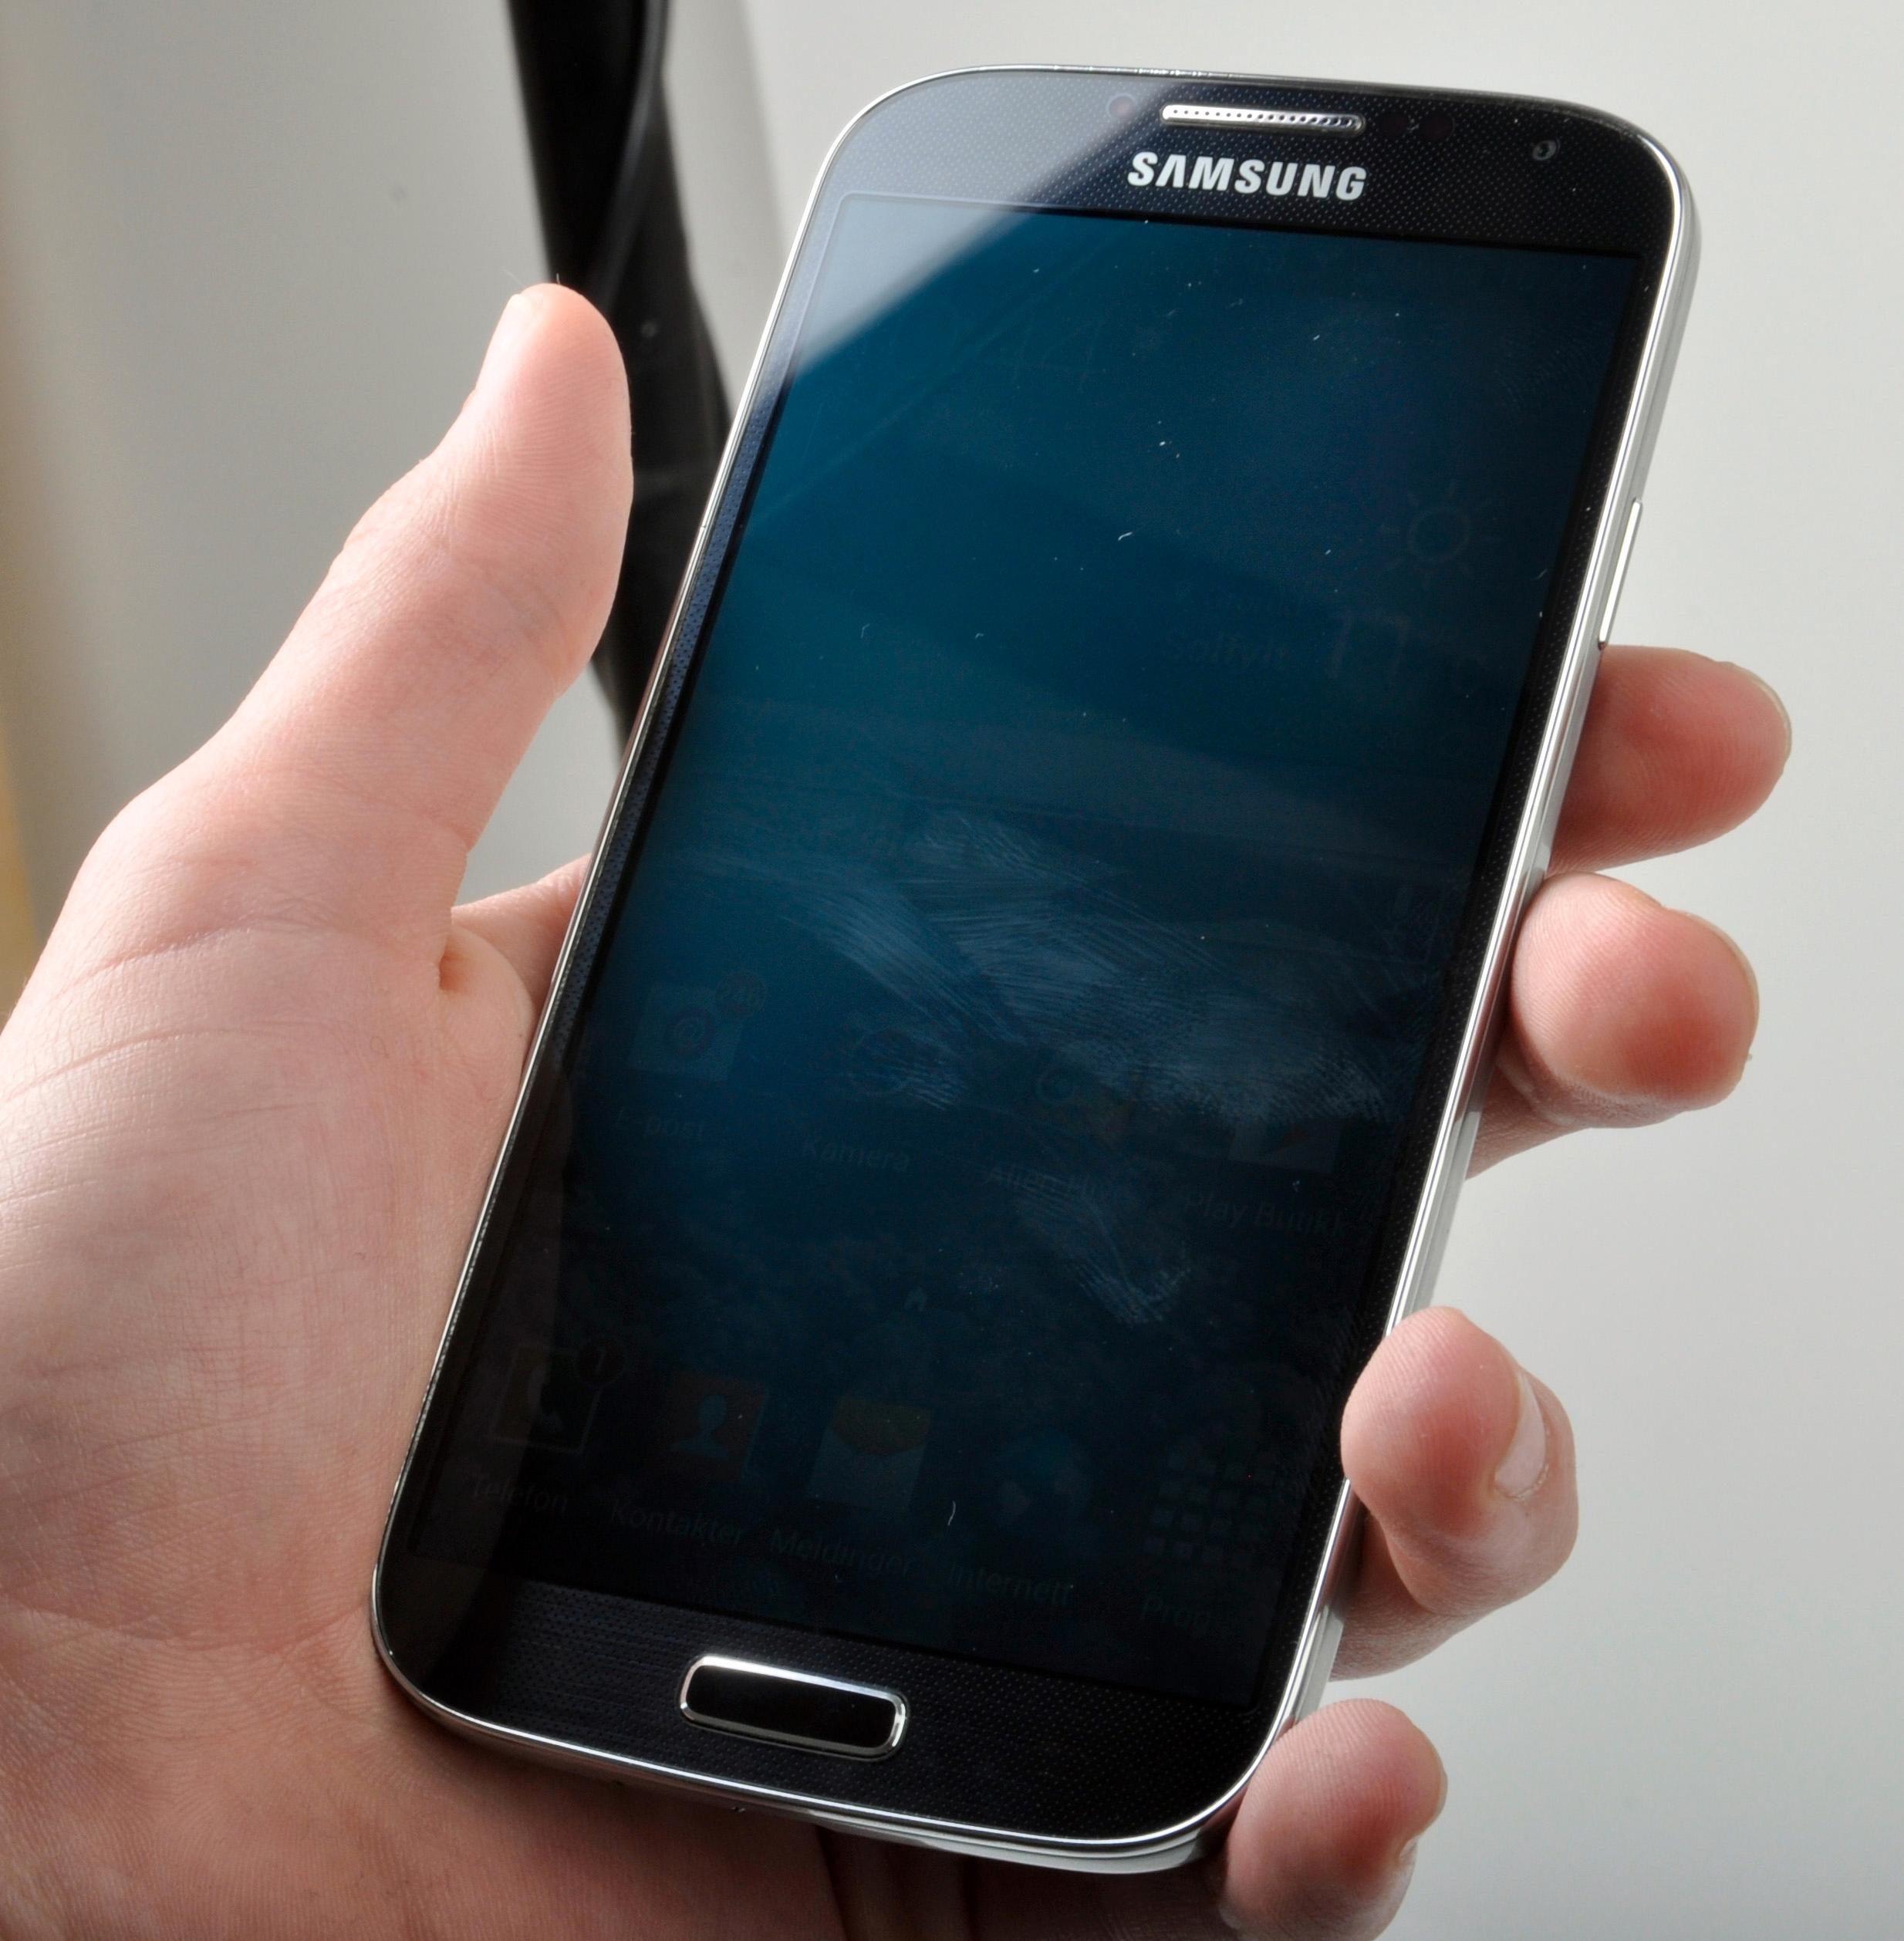 Også Samsungs Galaxy S4 har flere innebygde sensorer enn vi er vant til å finne.Foto: Sander Dyrop, Amobil.no